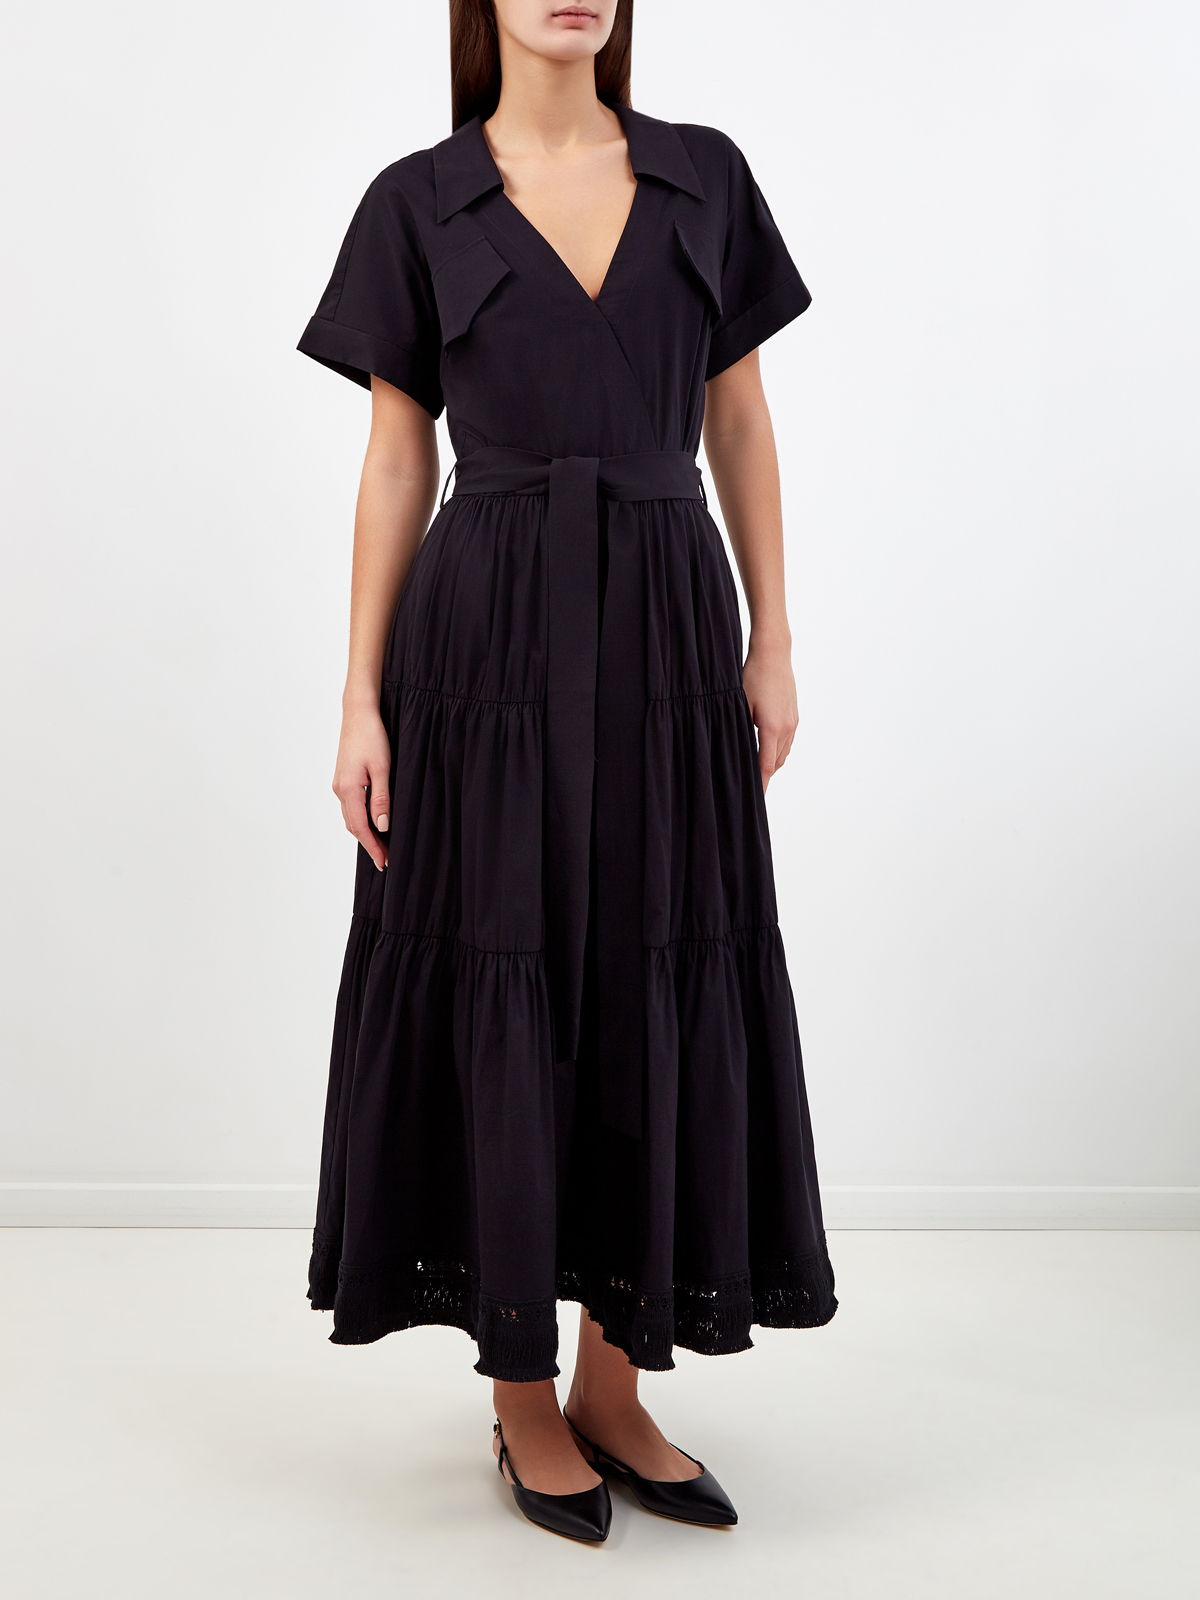 Платье из хлопка с объемным подолом и ажурной бахромой RE VERA, цвет черный, размер 44;46;42 - фото 3